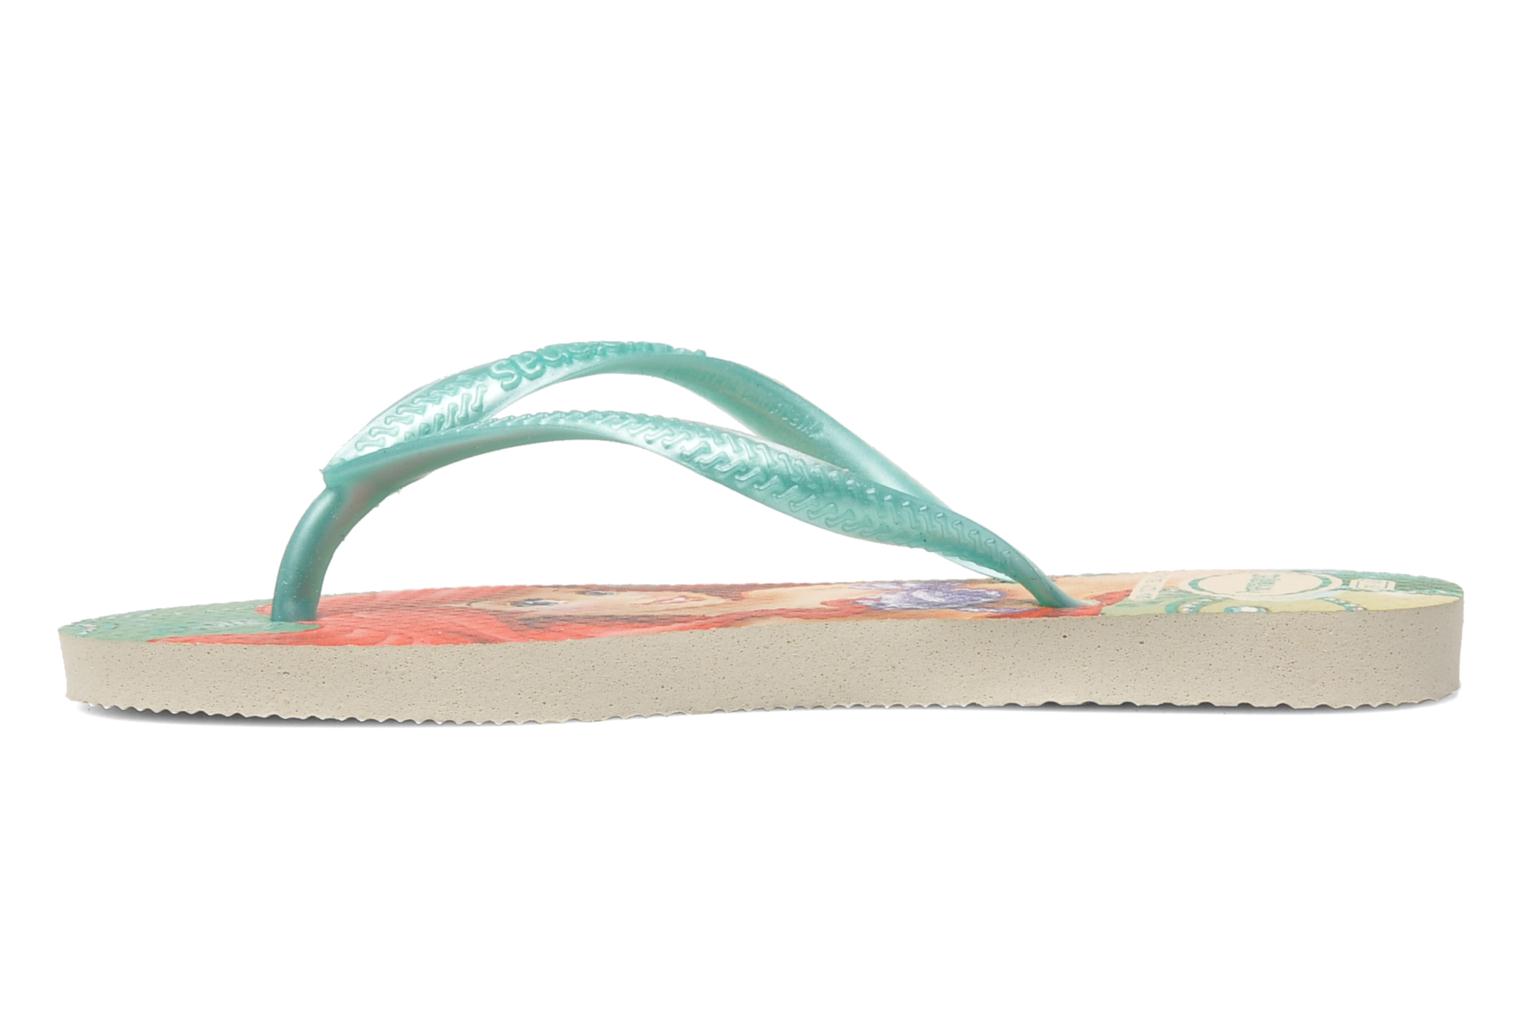 Havaianas Slim Princess (Multicolor) - Flip flops chez Sarenza (179594)